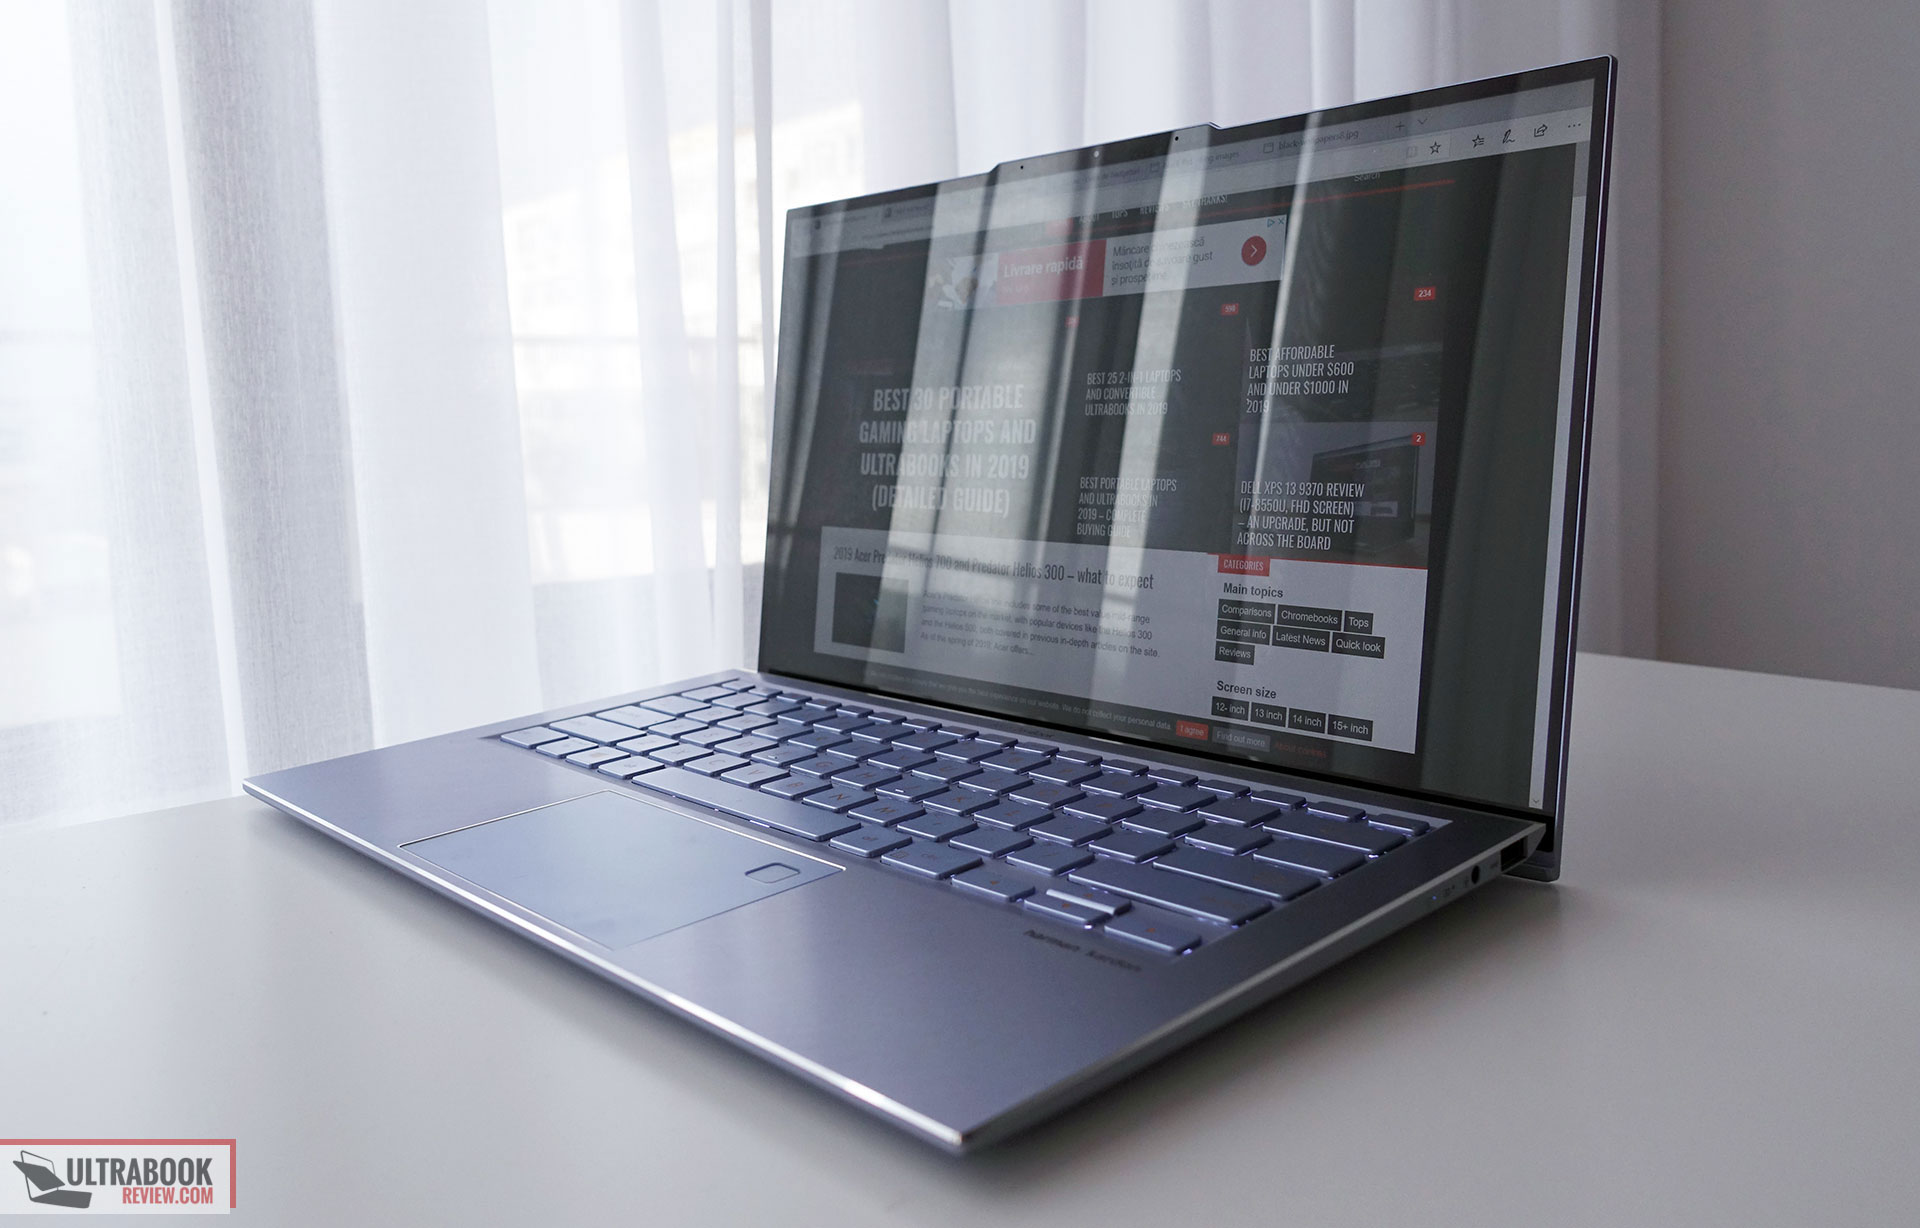 Asus ZenBook S13 review (UX392FN - Core i7, MX150)